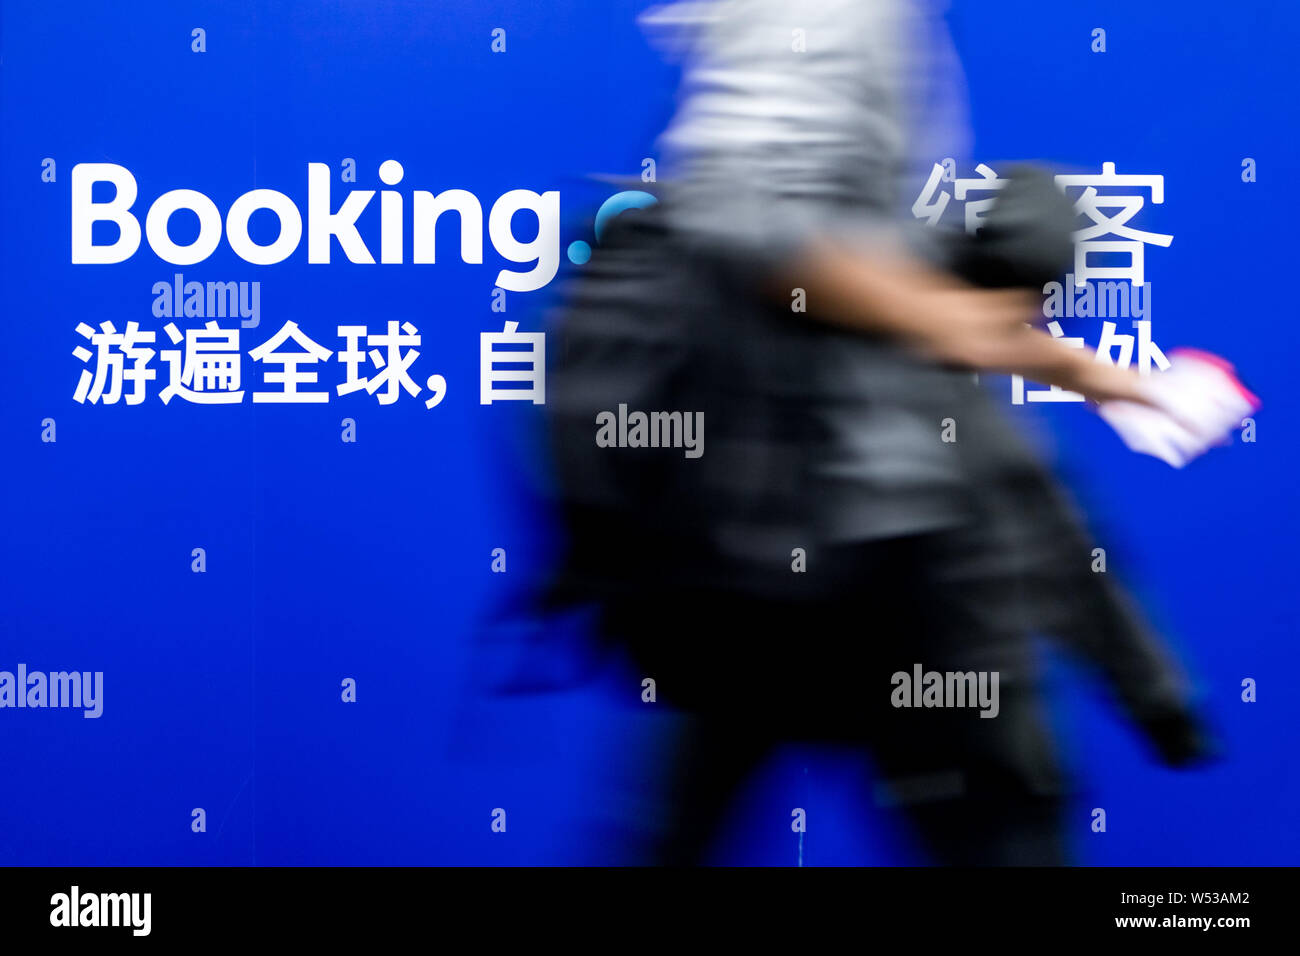 Un passeggero passeggiate passato un annuncio pubblicitario per la prenotazione di hotel online sito booking.com in corrispondenza di una stazione di metropolitana in Cina a Shanghai, 29 dicembre 2018. Booki Foto Stock